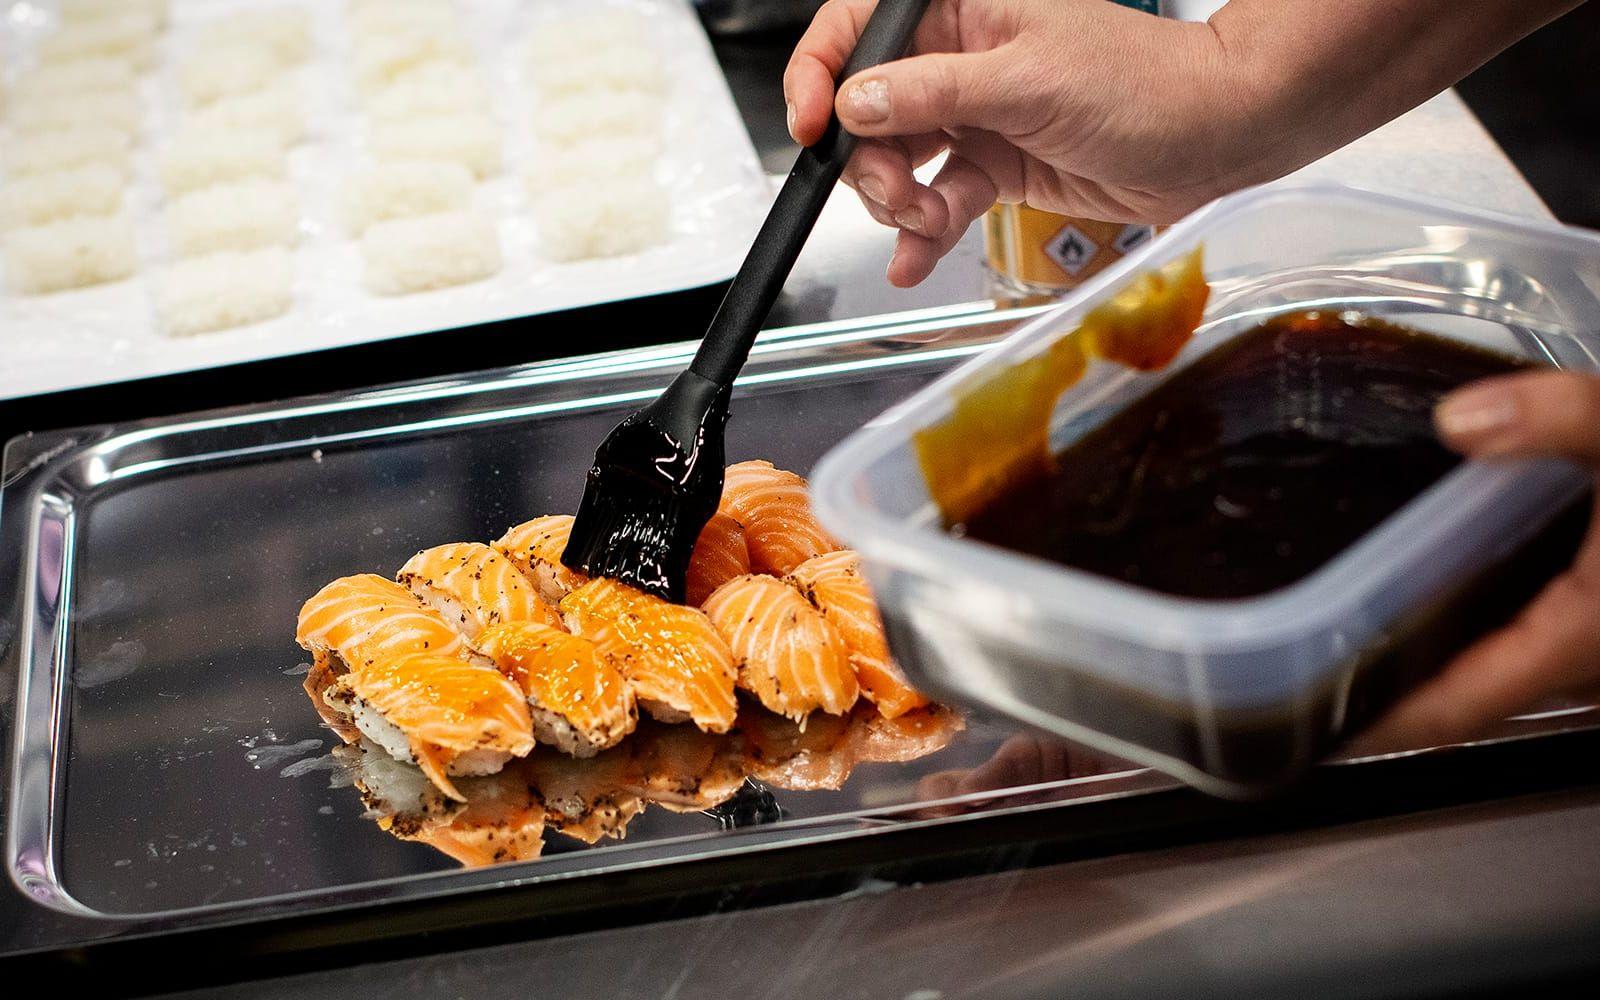 Lokalt samarbete. Tillsammans med resturang Takenaka i Halmstad har Maxi Flygstaden tagit fram ett eget sushi-sortiment speciellt anpassat för sin kundkrets.